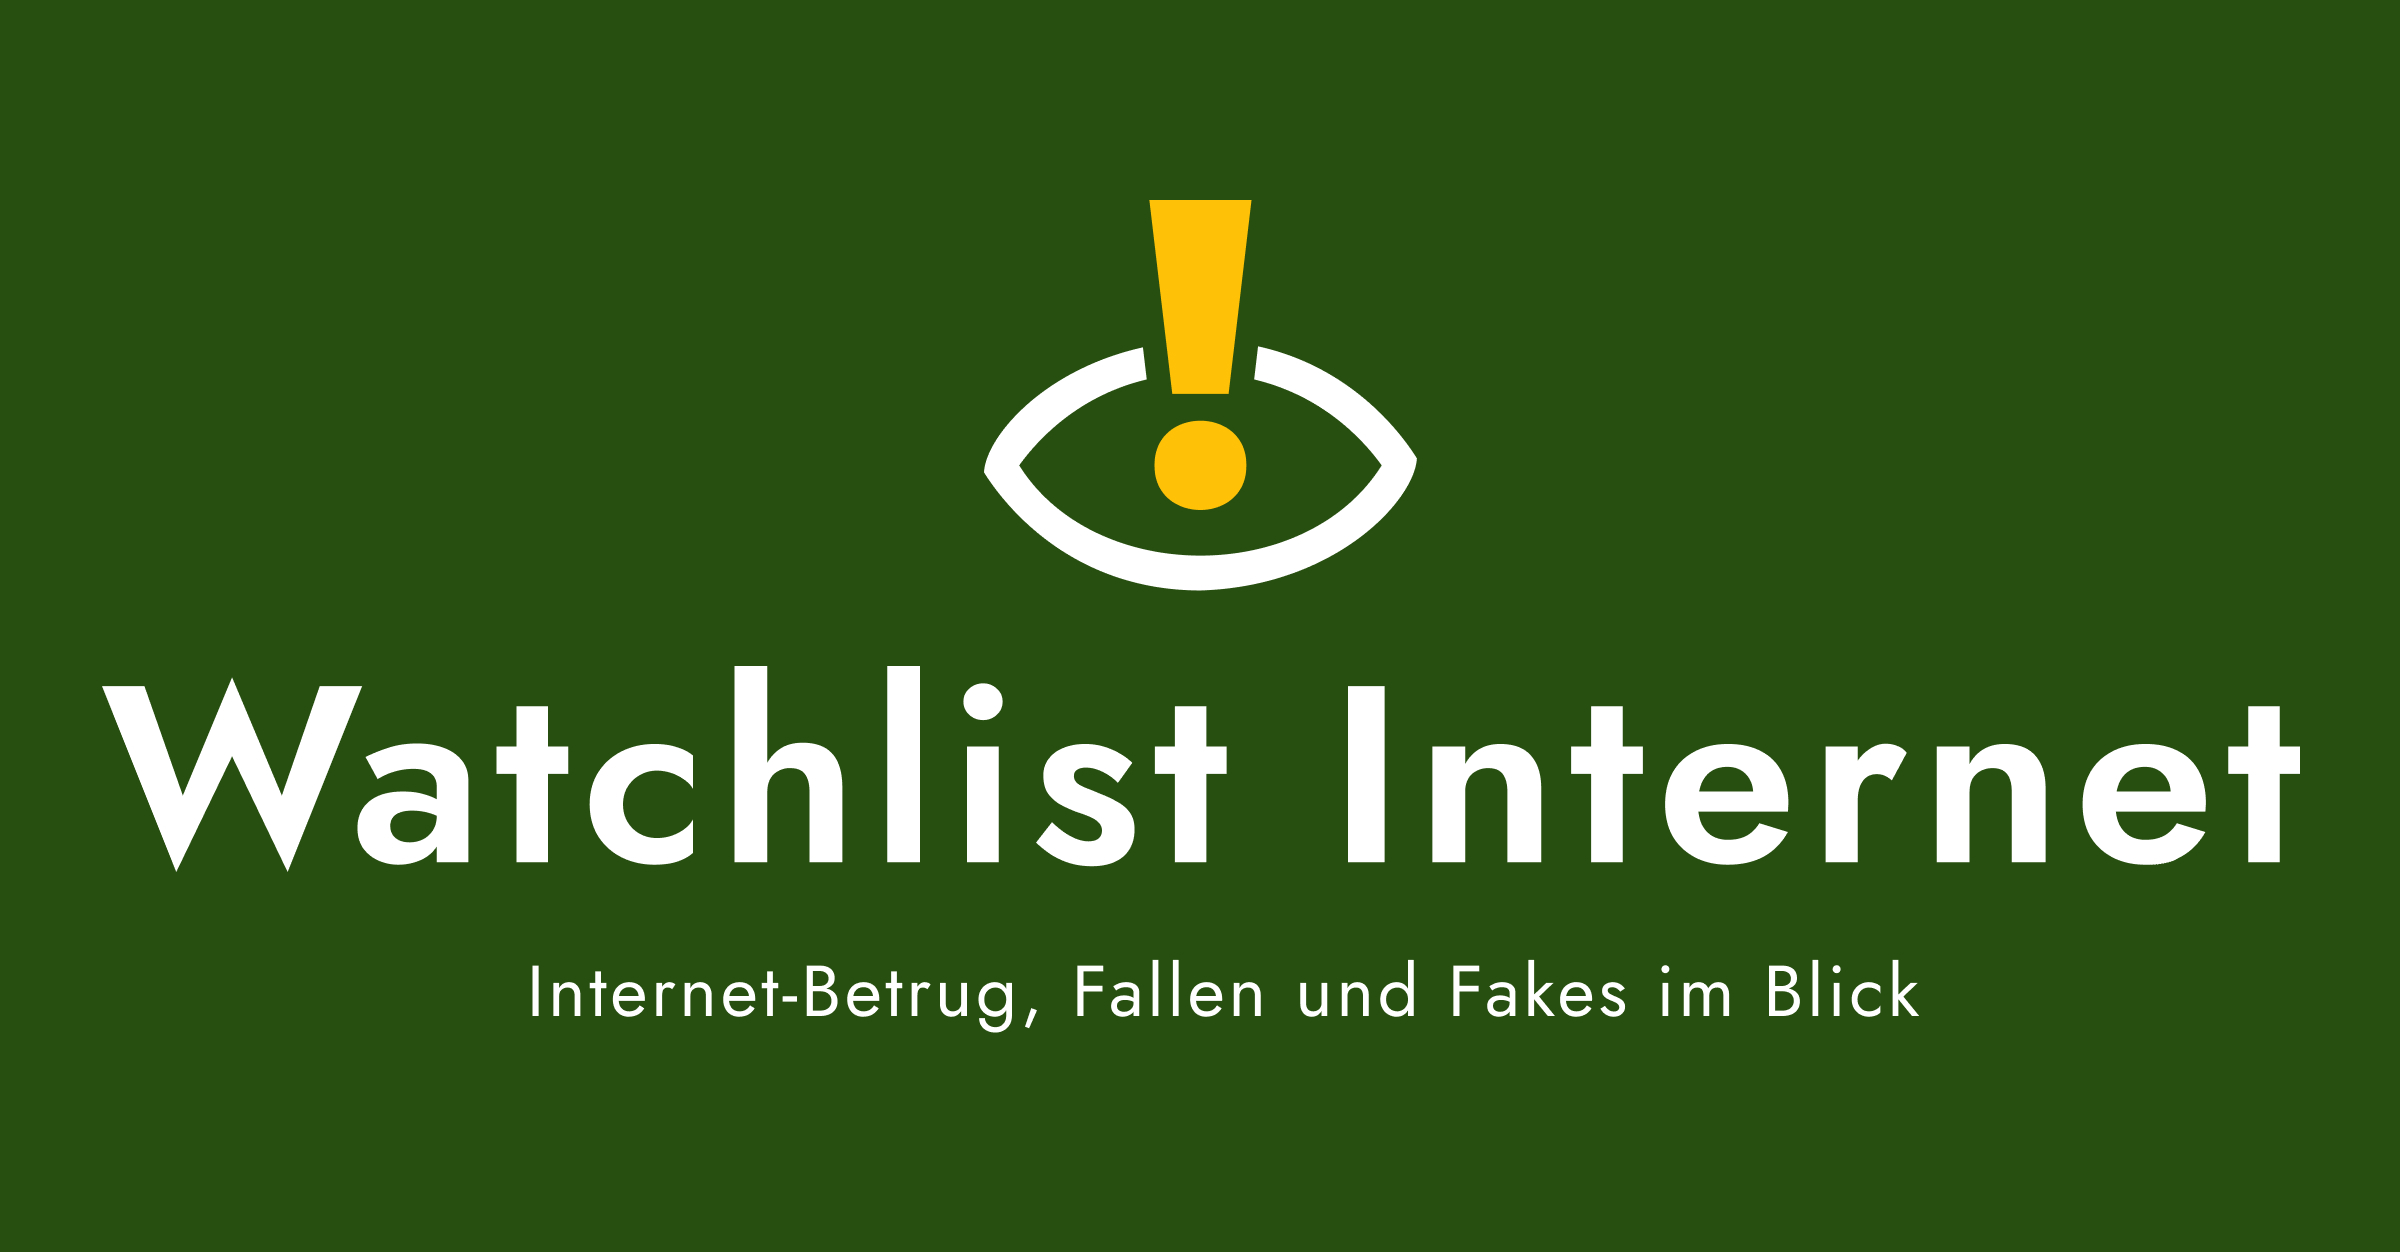 (c) Watchlist-internet.at